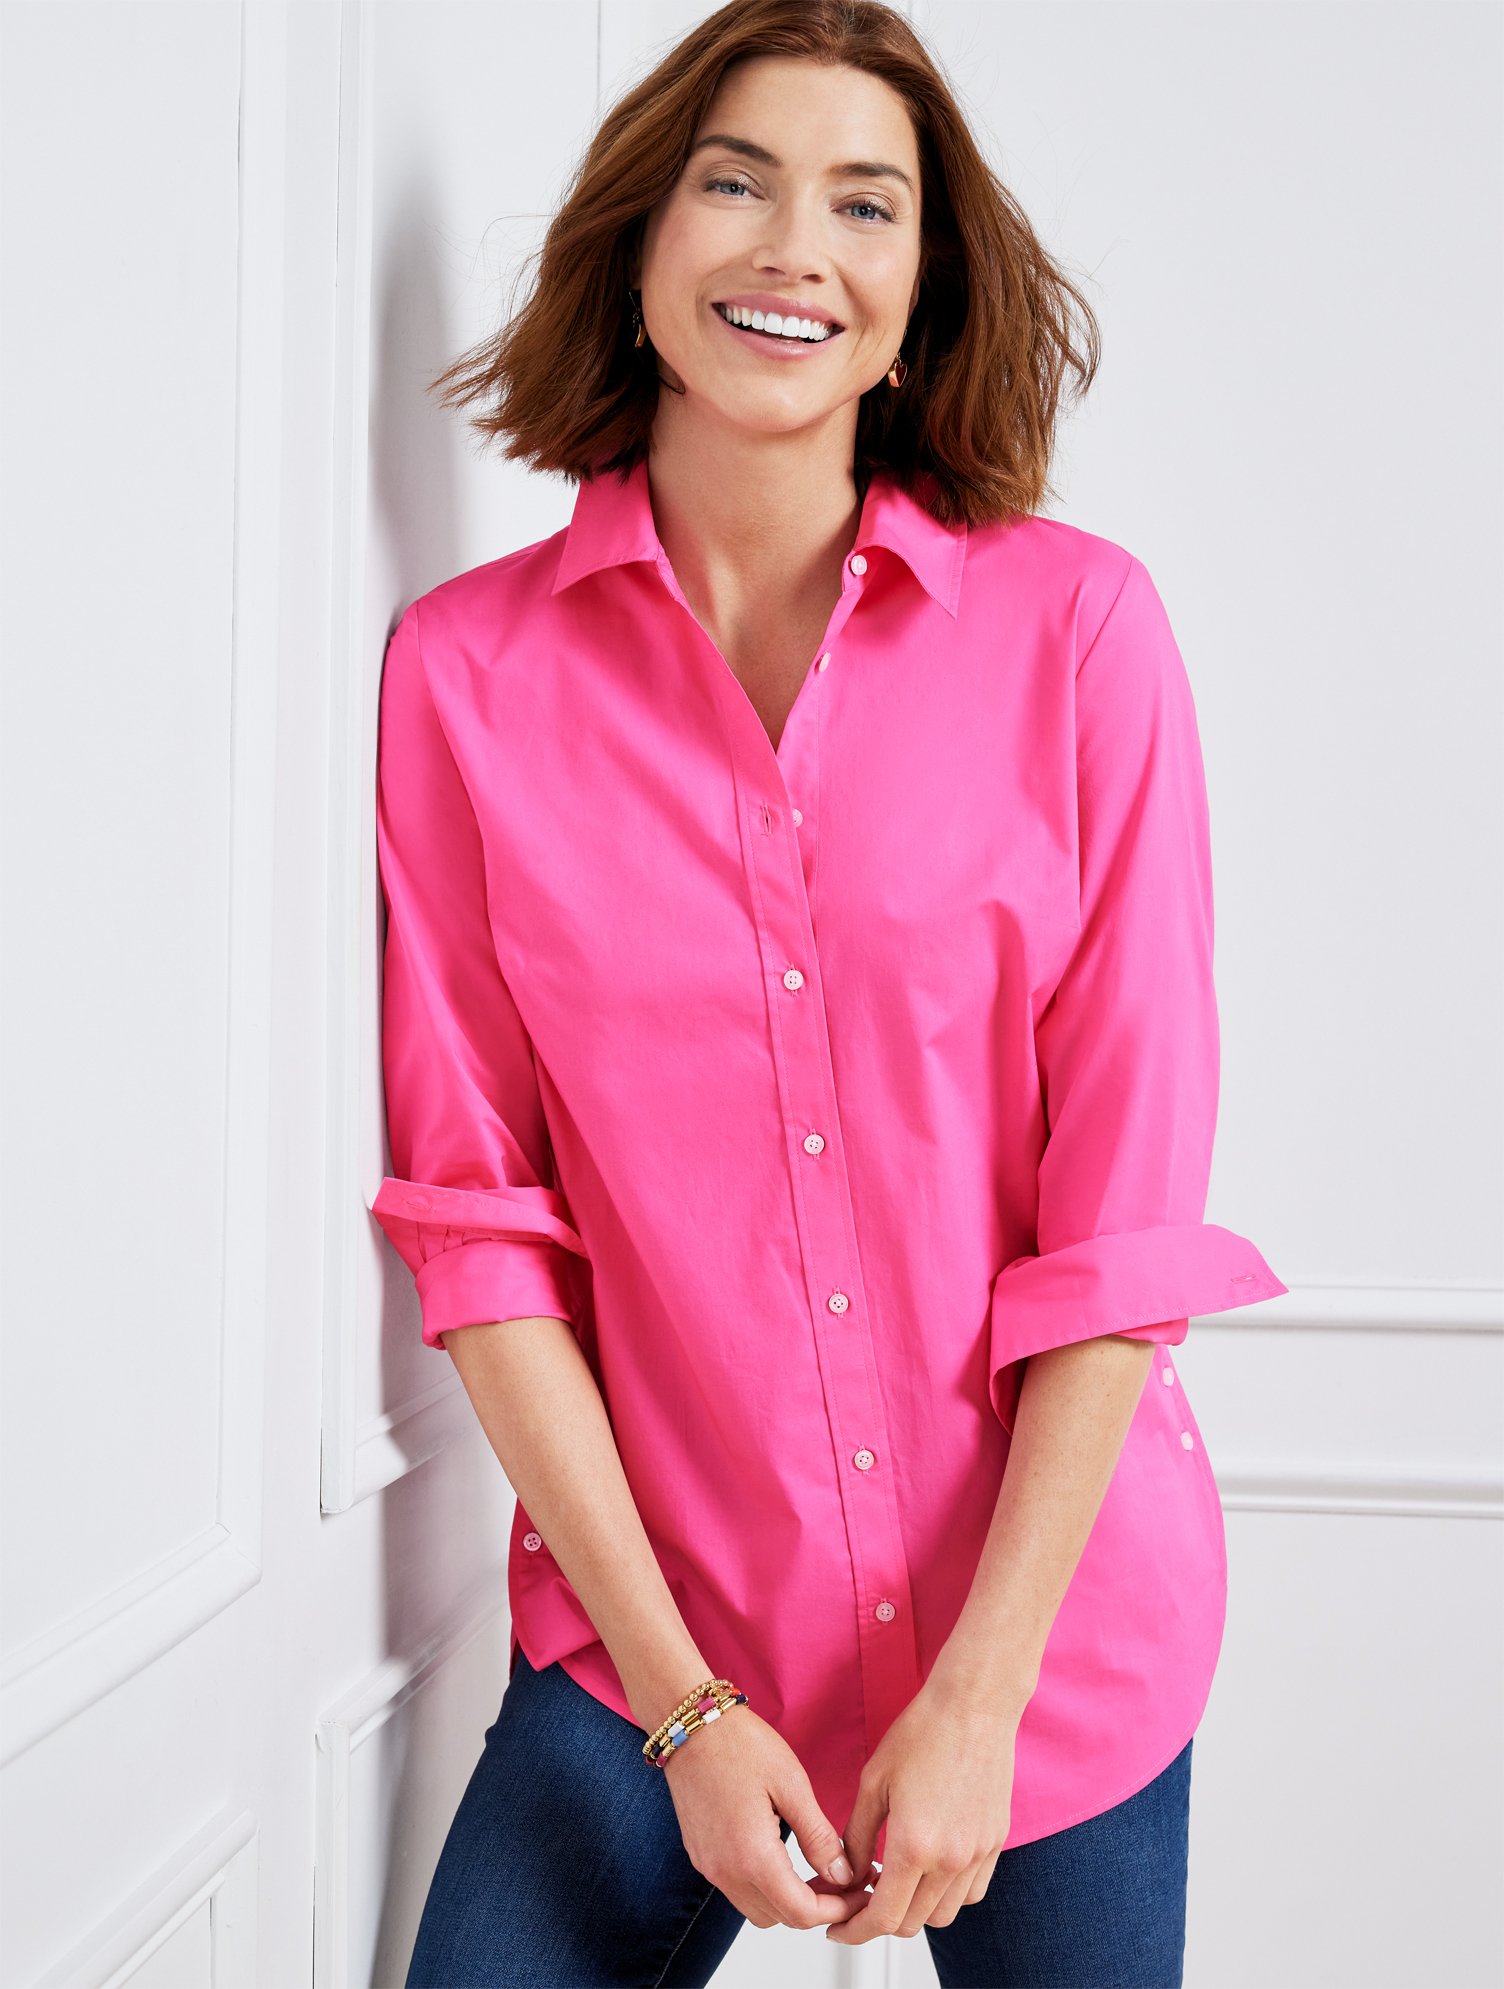 Talbots Side Button Boyfriend Shirt - Pink Geranium - Medium - 100% Cotton